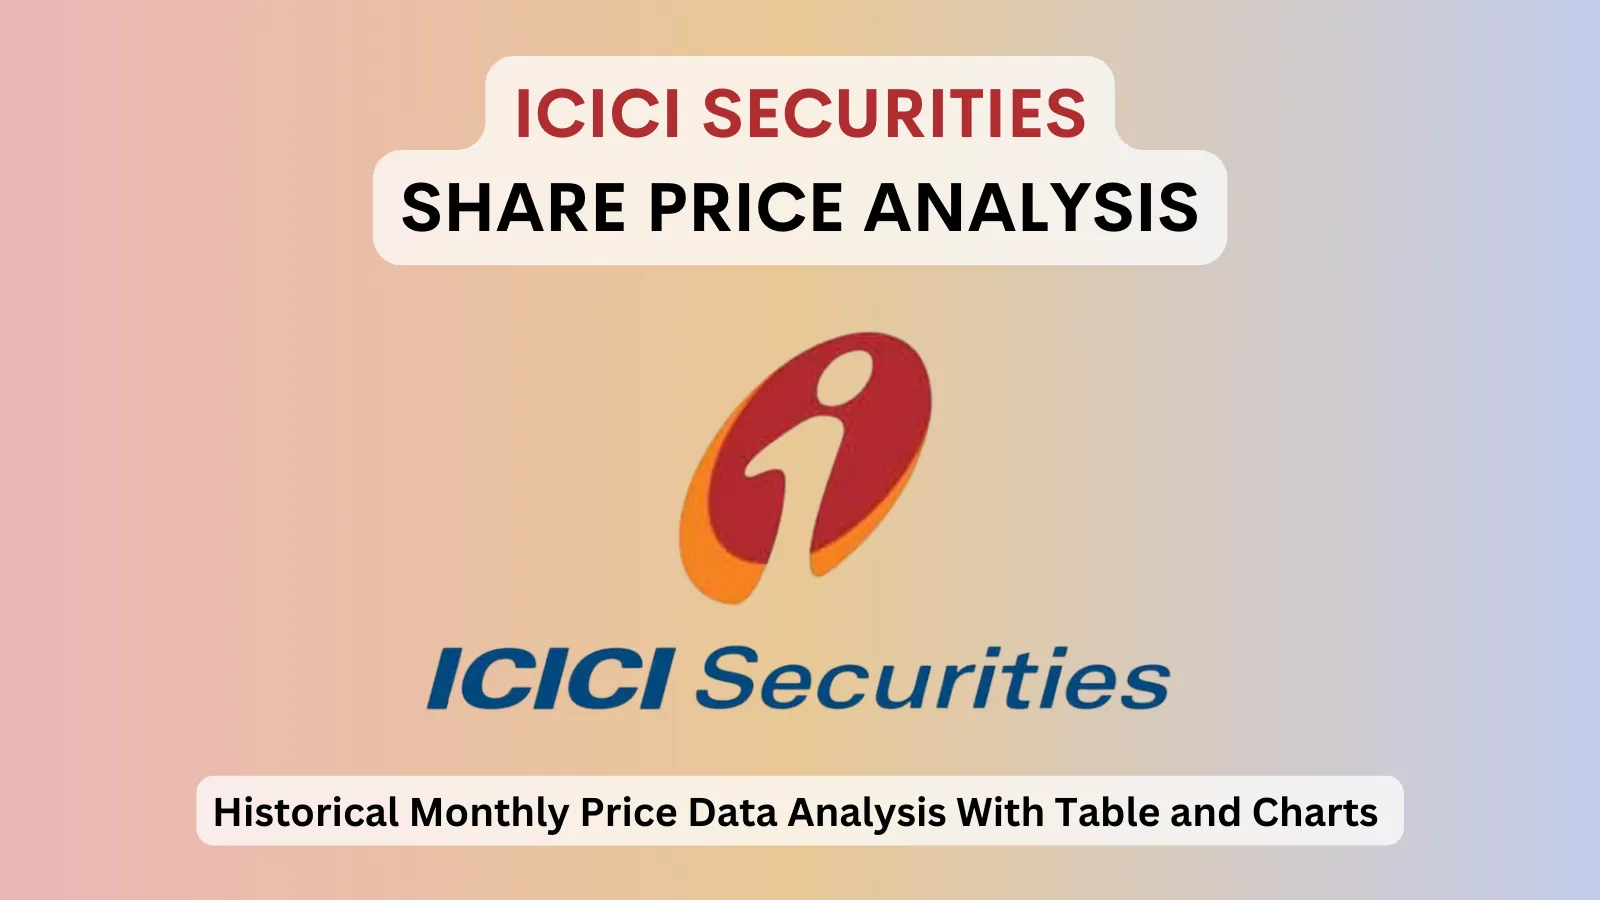 ICICI Securities share price analysis